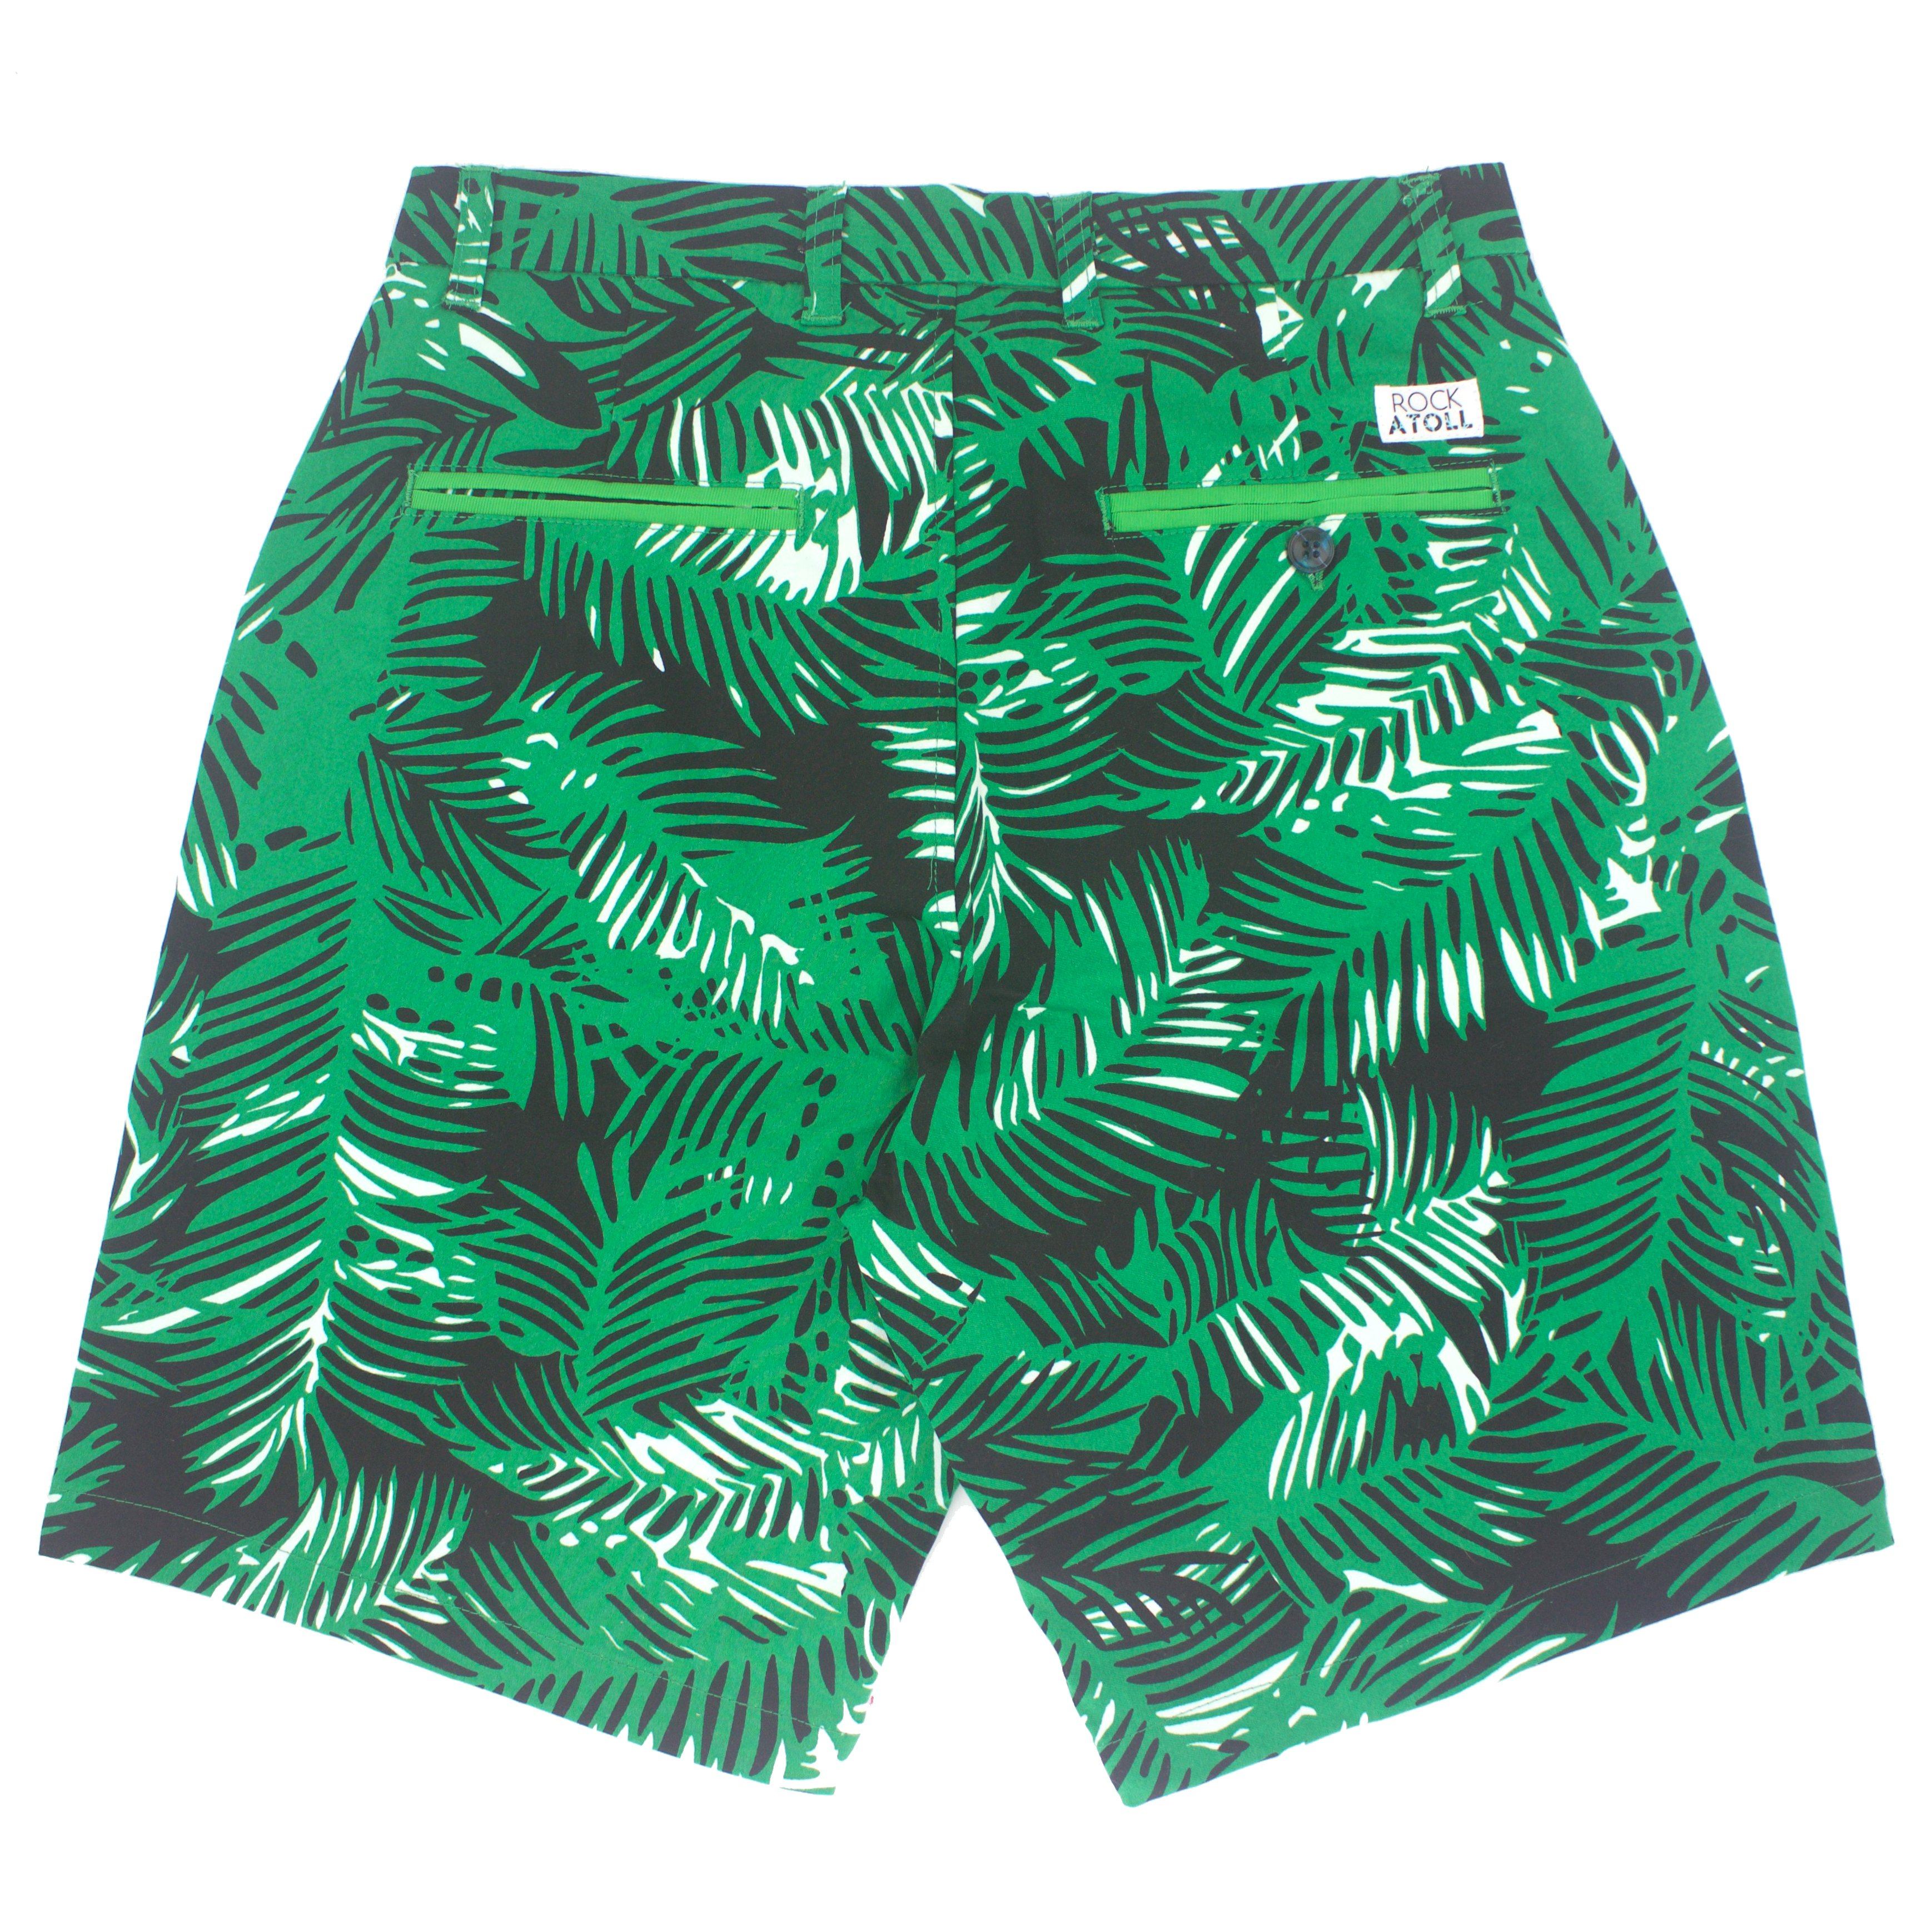 Green Leaves Camouflage Jungle Leaf Bermuda Shorts for Men